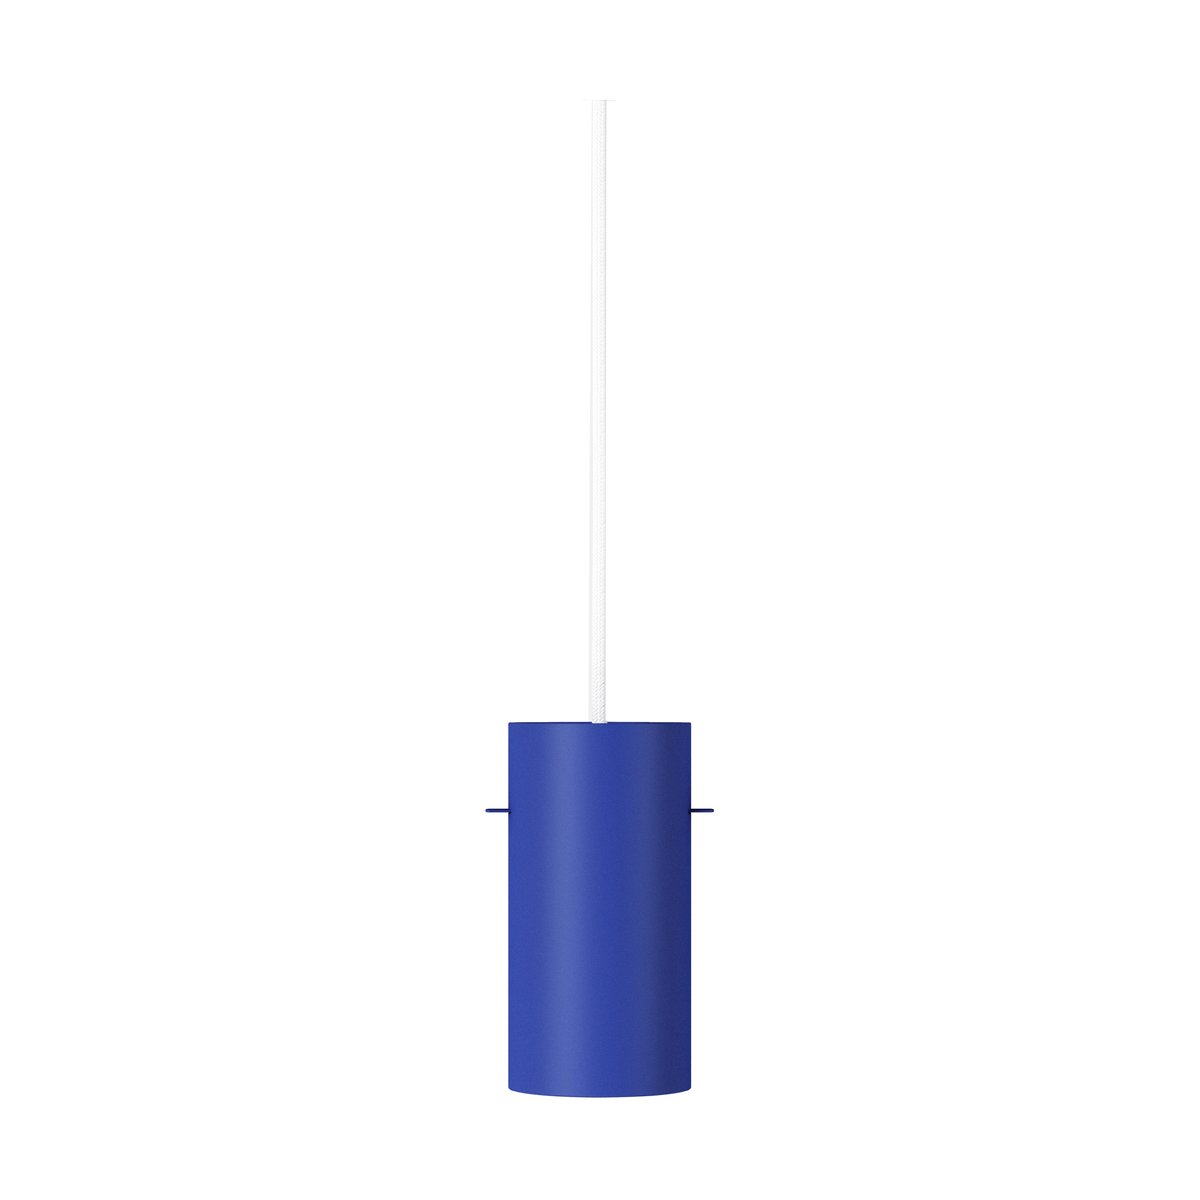 MOEBE Moebe Tube hanglamp small Ø8 cm Deep blue